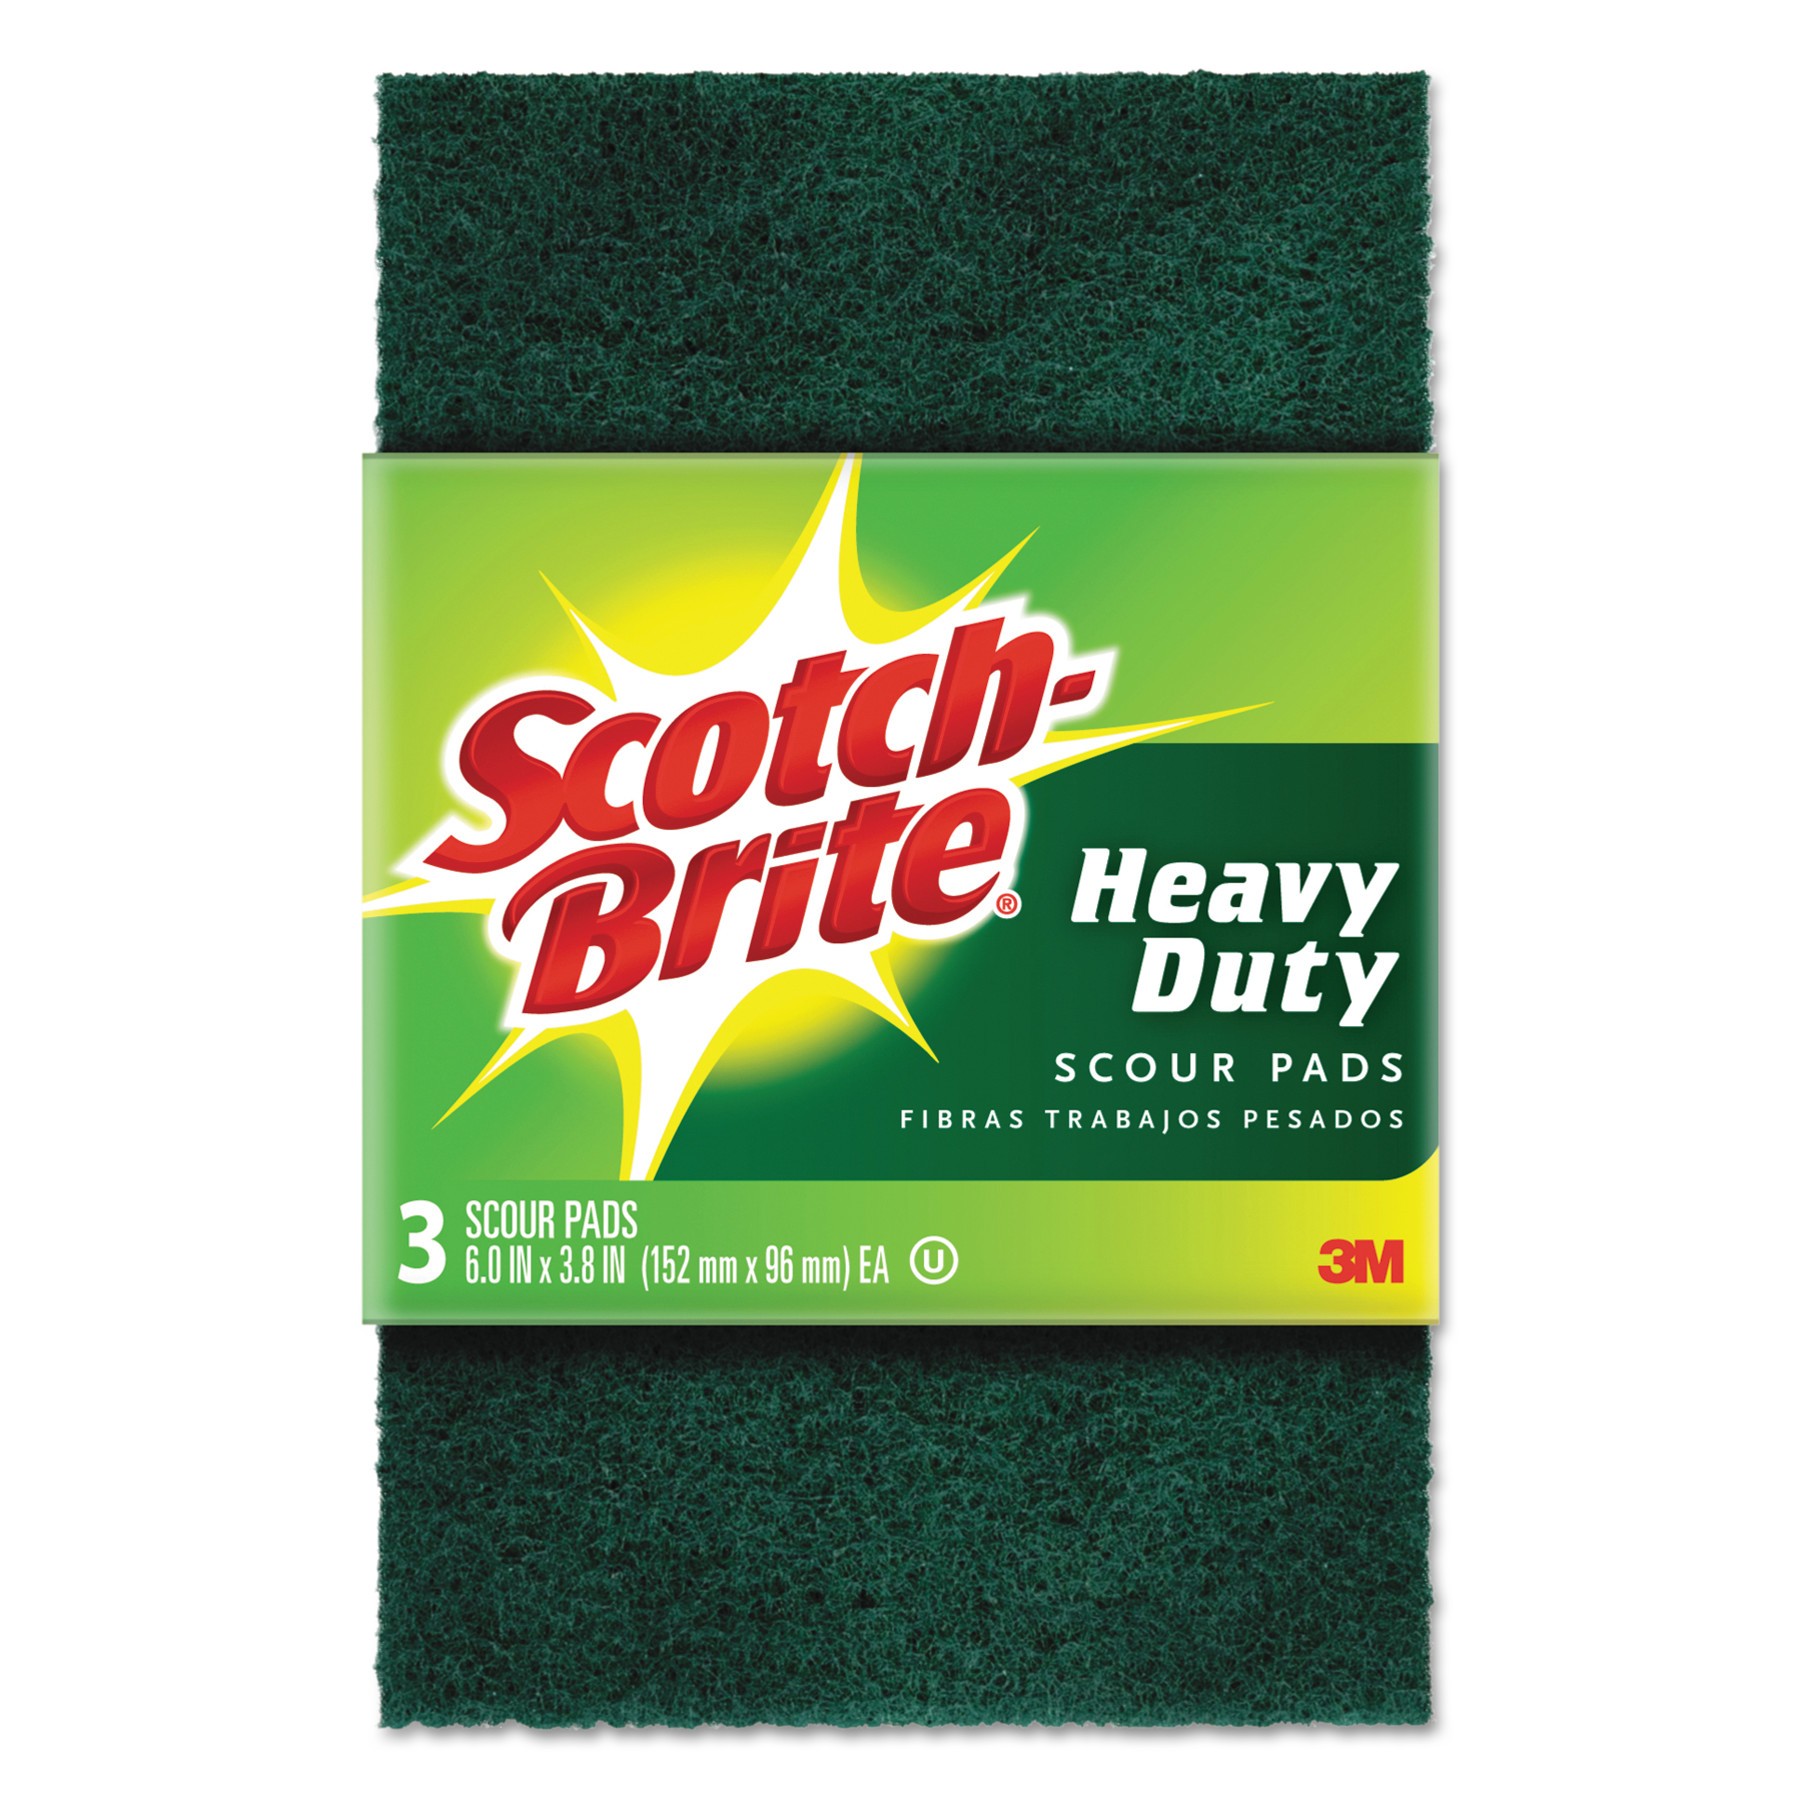 Heavy-Duty Scour Pad, 3.8w x 6"L, Green, 3/Pack, 10 Packs/Case